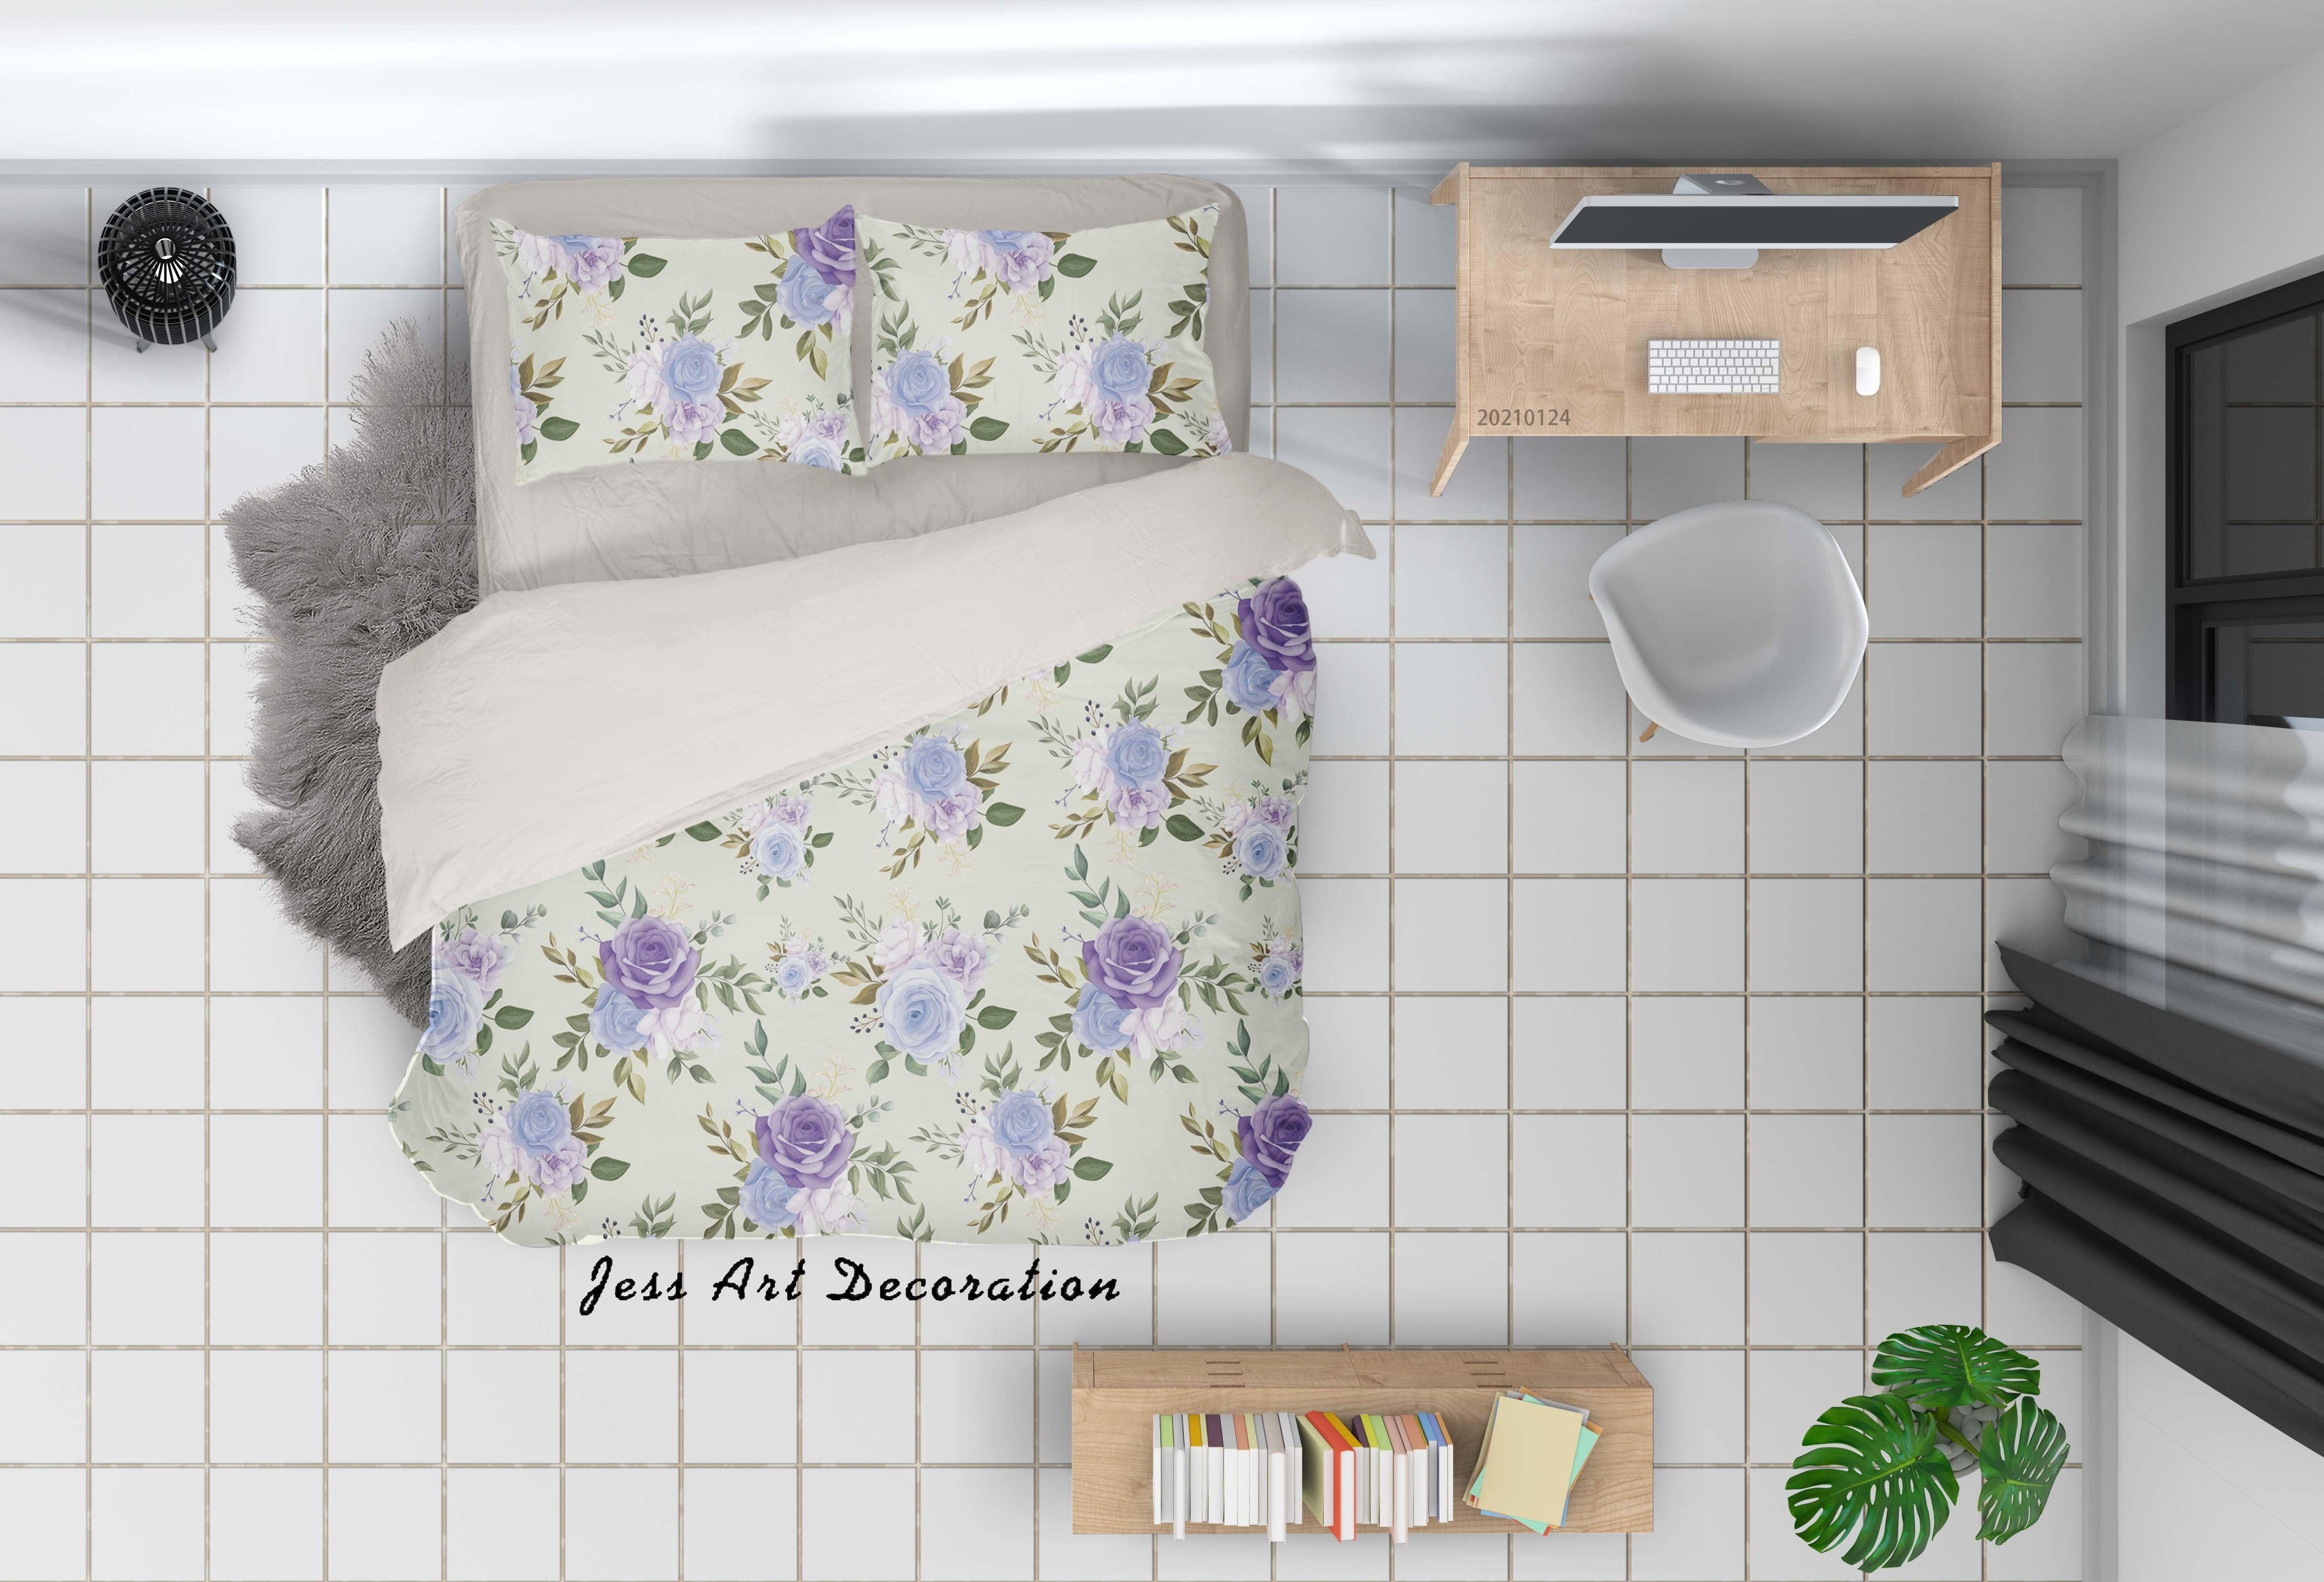 3D Watercolor Floral Quilt Cover Set Bedding Set Duvet Cover Pillowcases 8- Jess Art Decoration